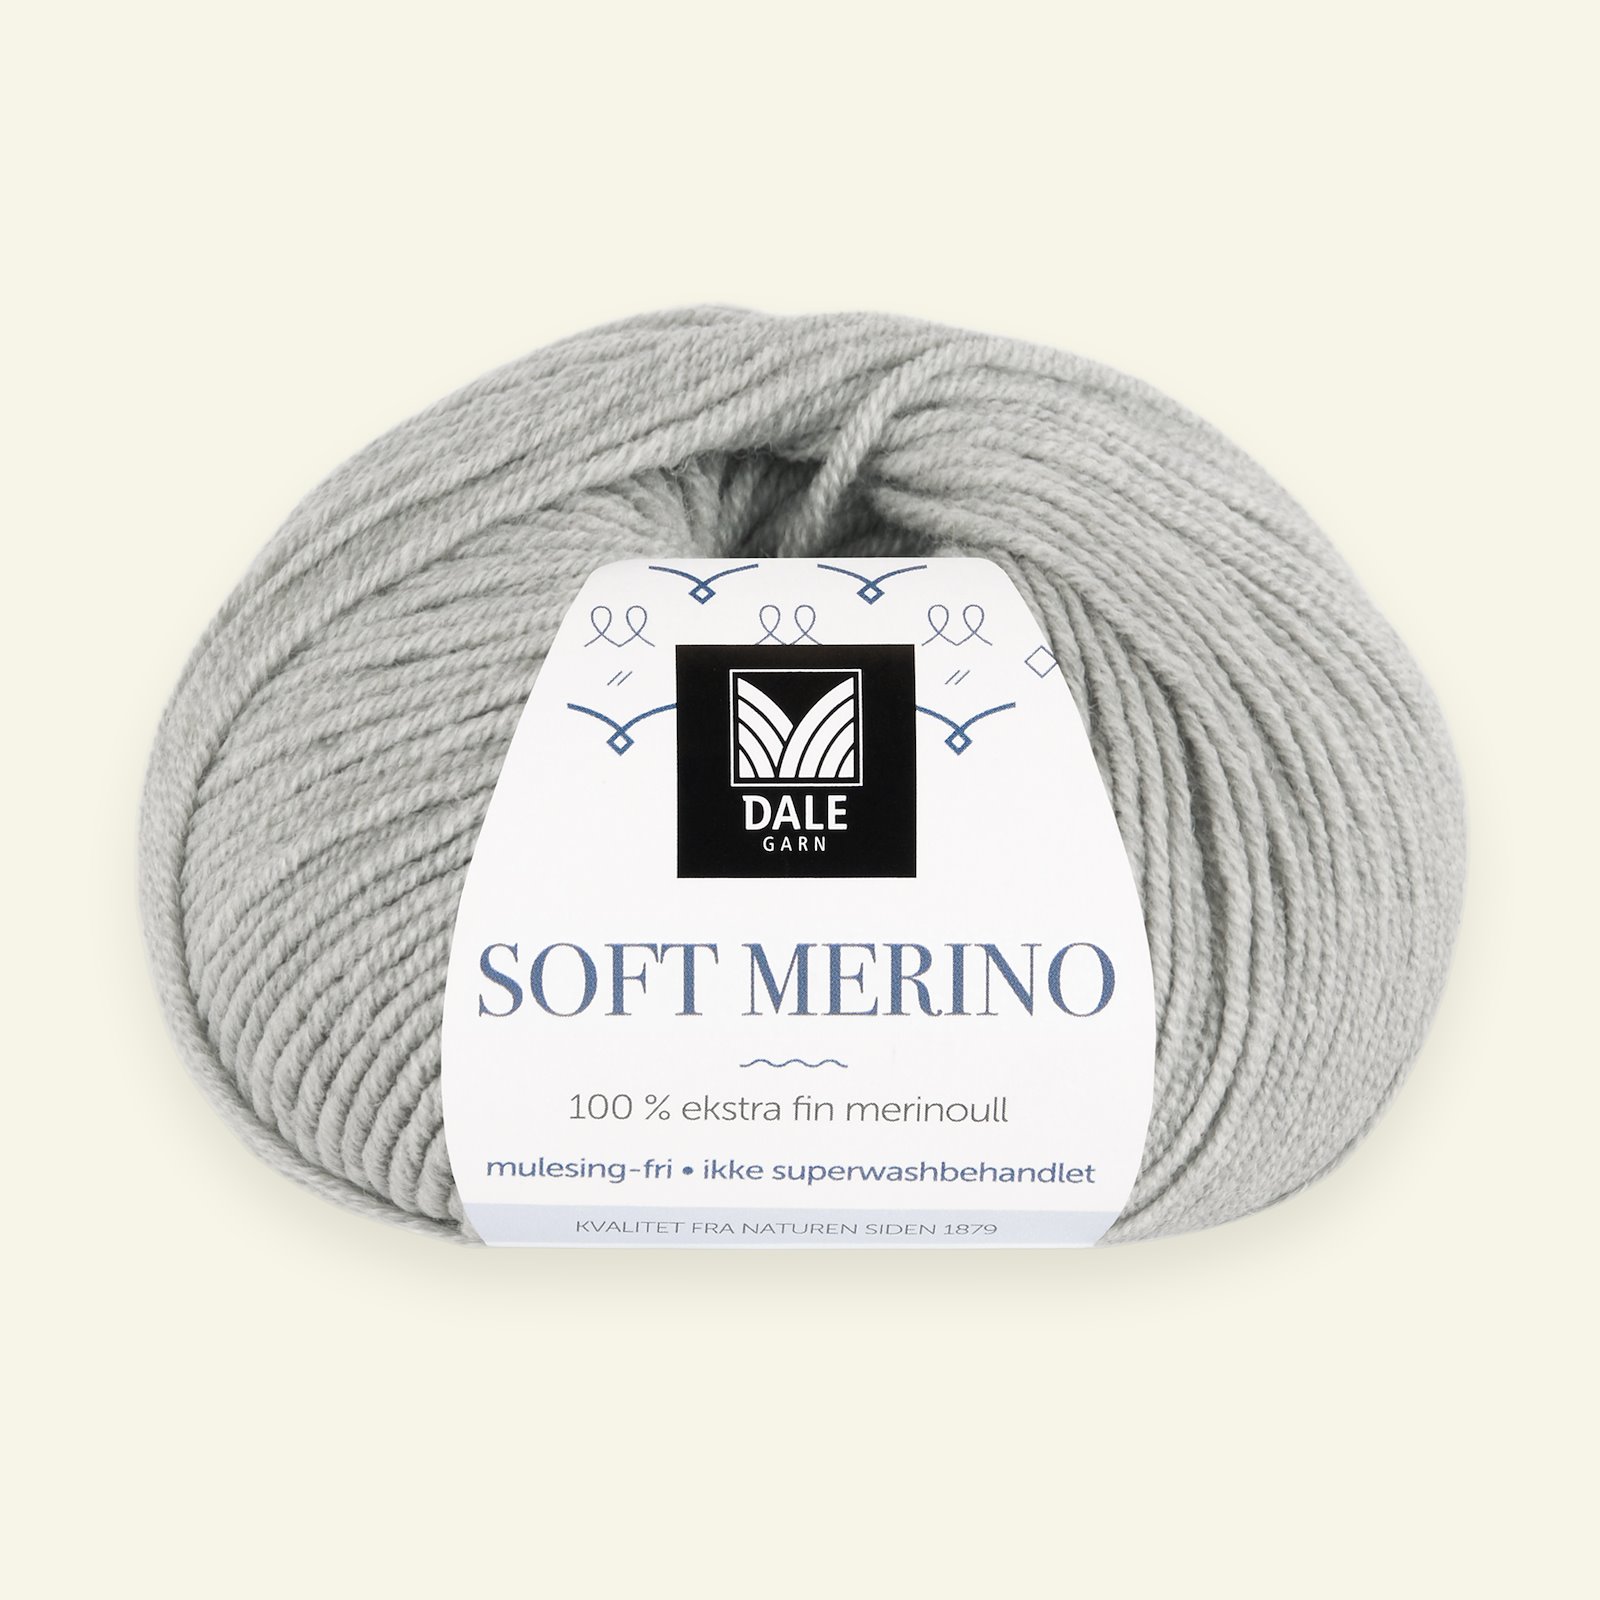 Dale Garn, 100% ekstra fint merinogarn "Soft Merino", Lys grå melert (3002) 90000324_pack